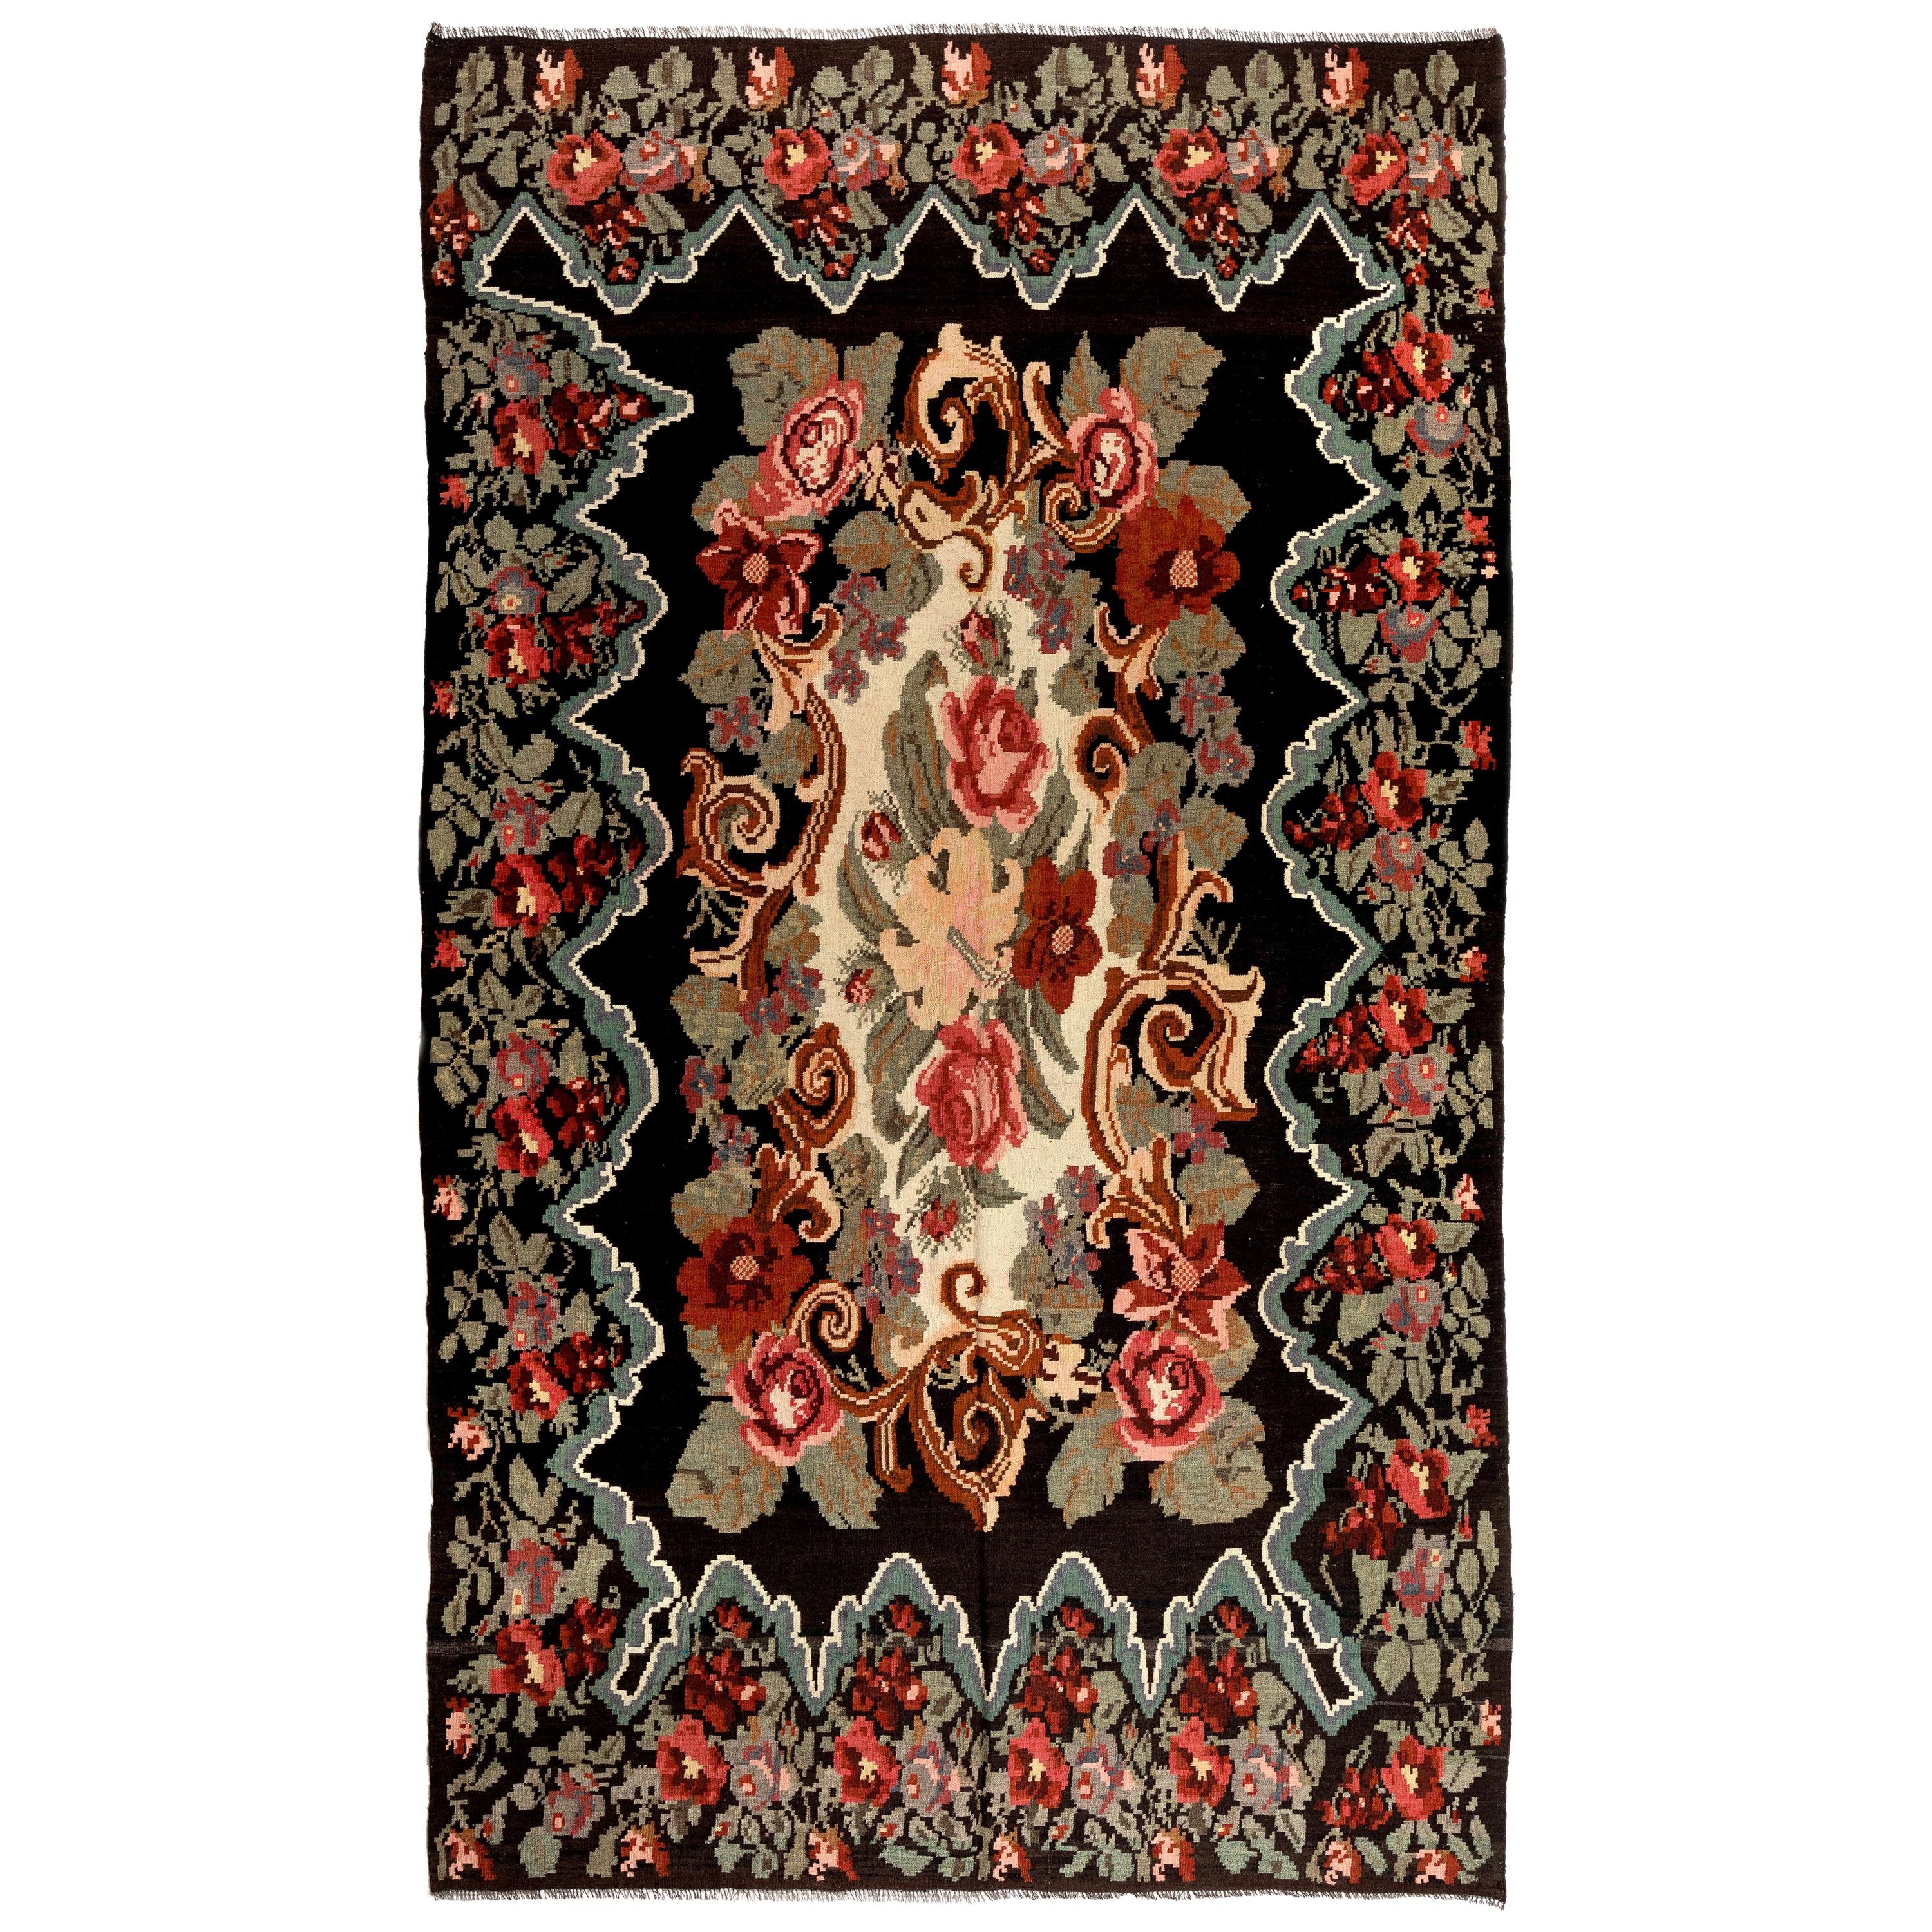 6.6x11 Ft Dekorativer handgefertigter bessarabischer Kelim-Teppich mit Blumenmuster. Vintage-Wandteppich